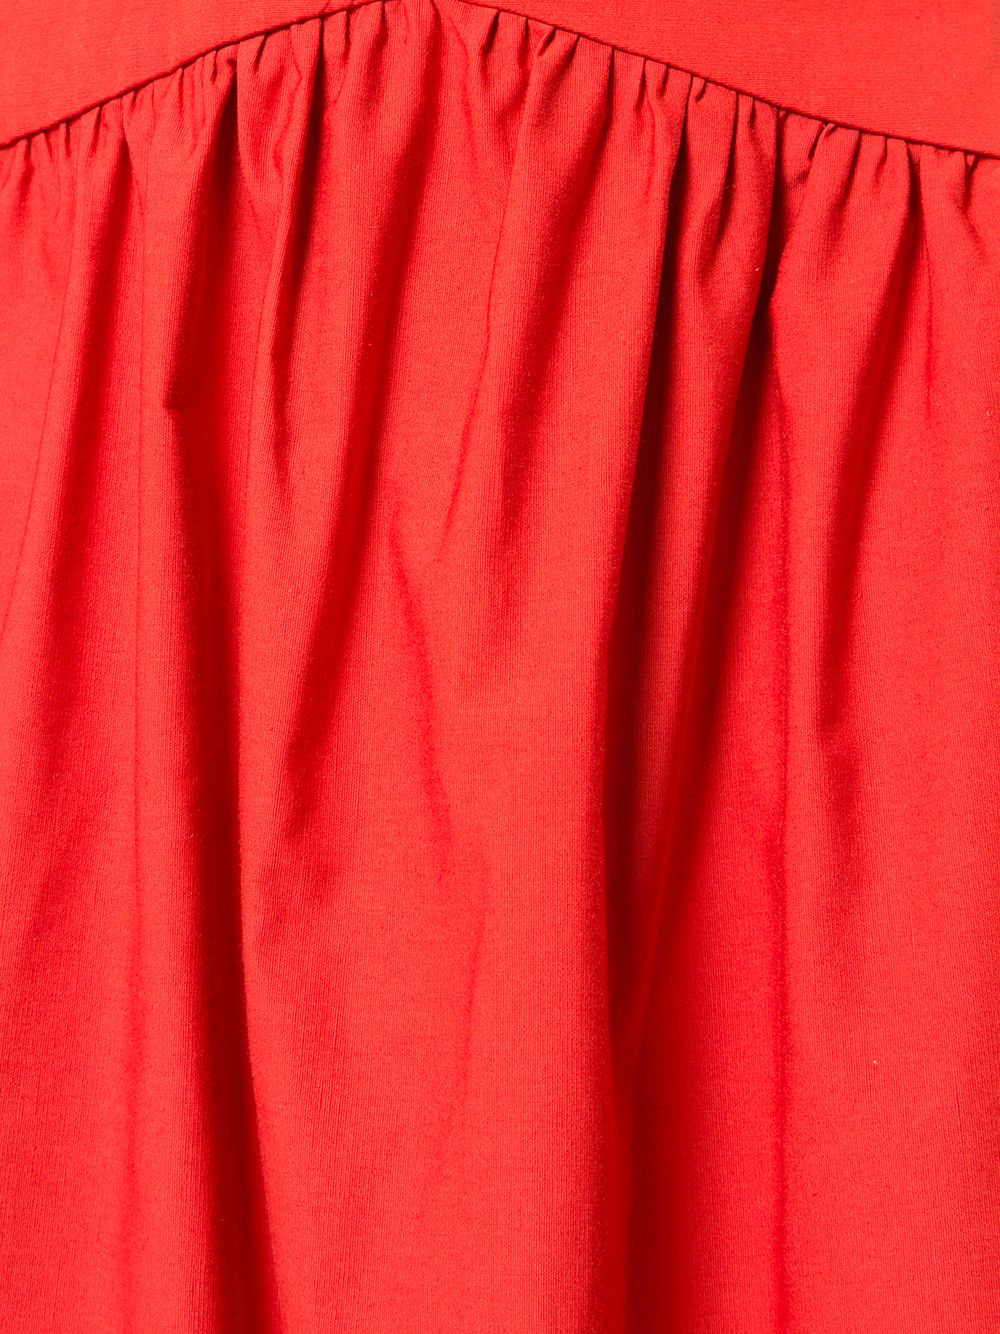 фото Atlantique ascoli расклешенная юбка